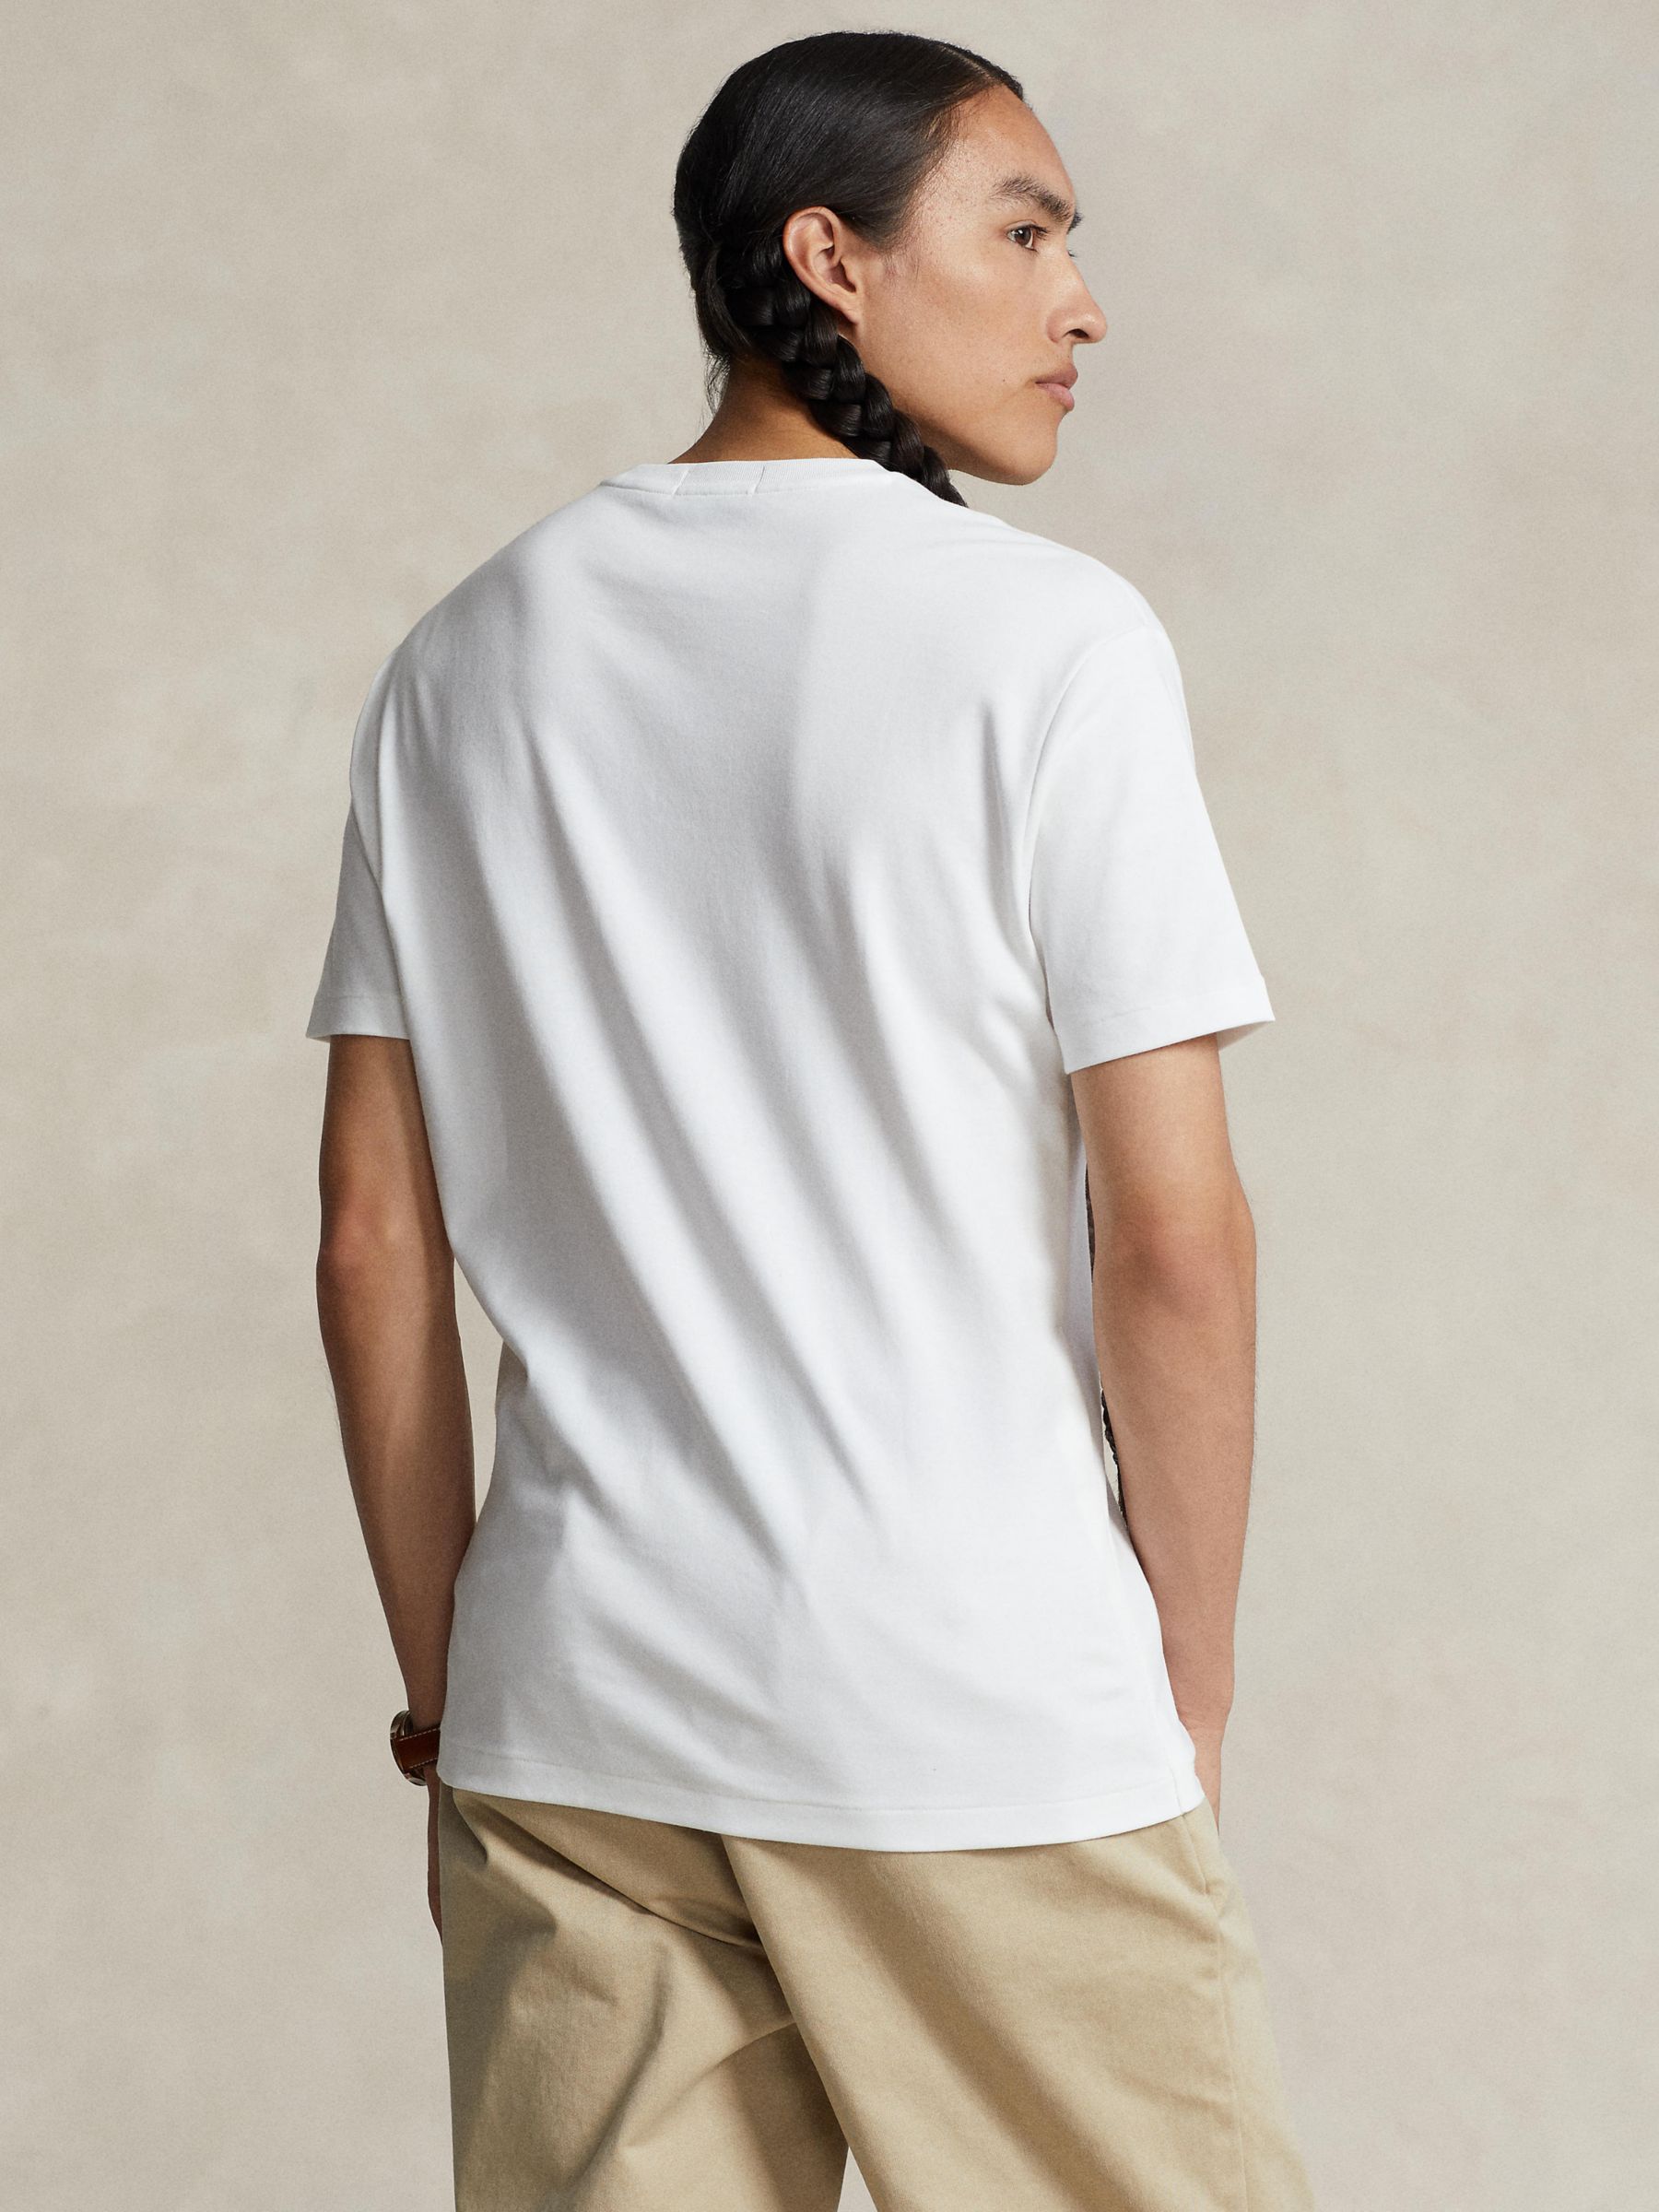 Ralph Lauren Ultra Smooth T-Shirt, White, S